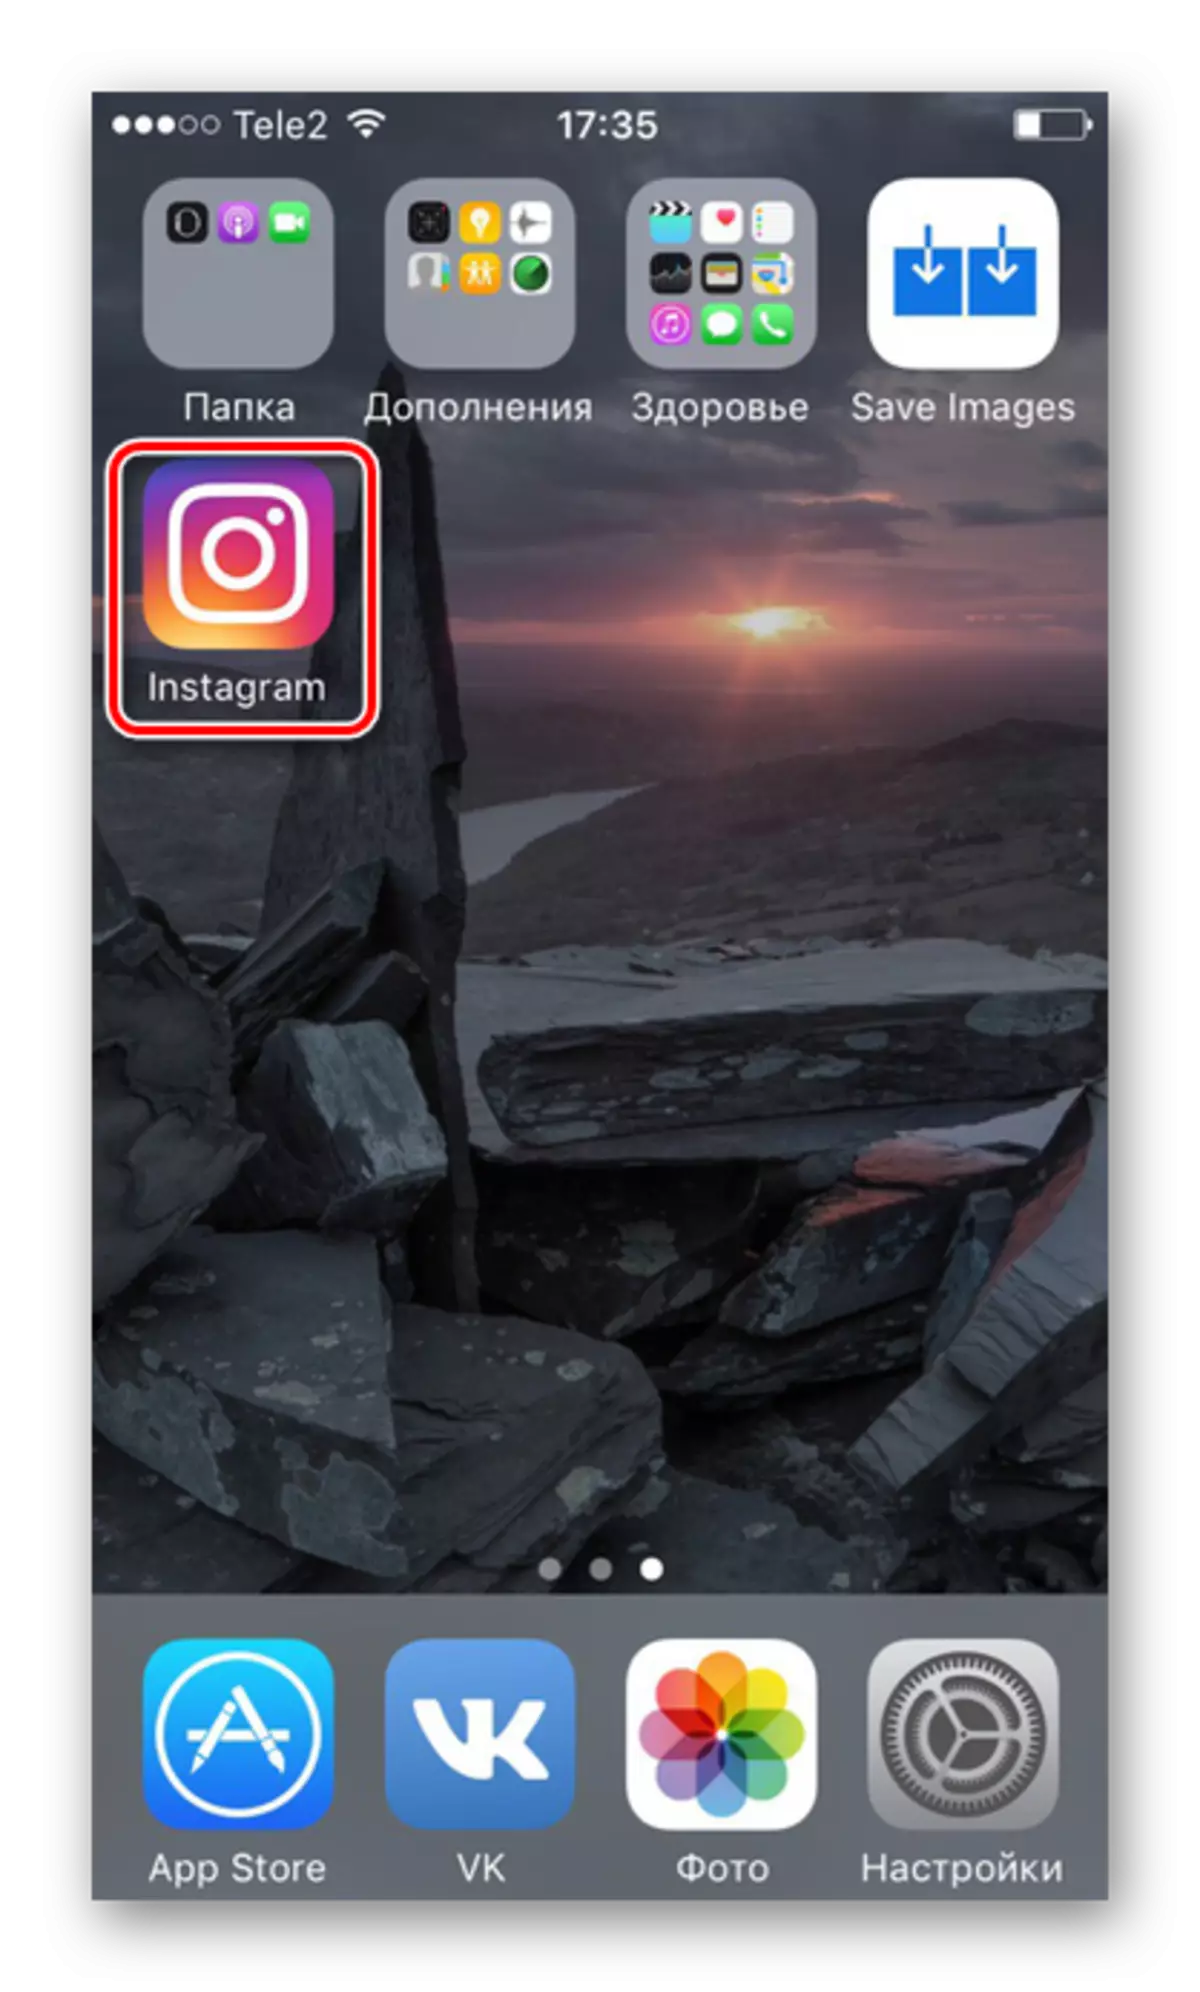 Prehod na aplikacijo Instagram, da ustvarite posnetek fotografije